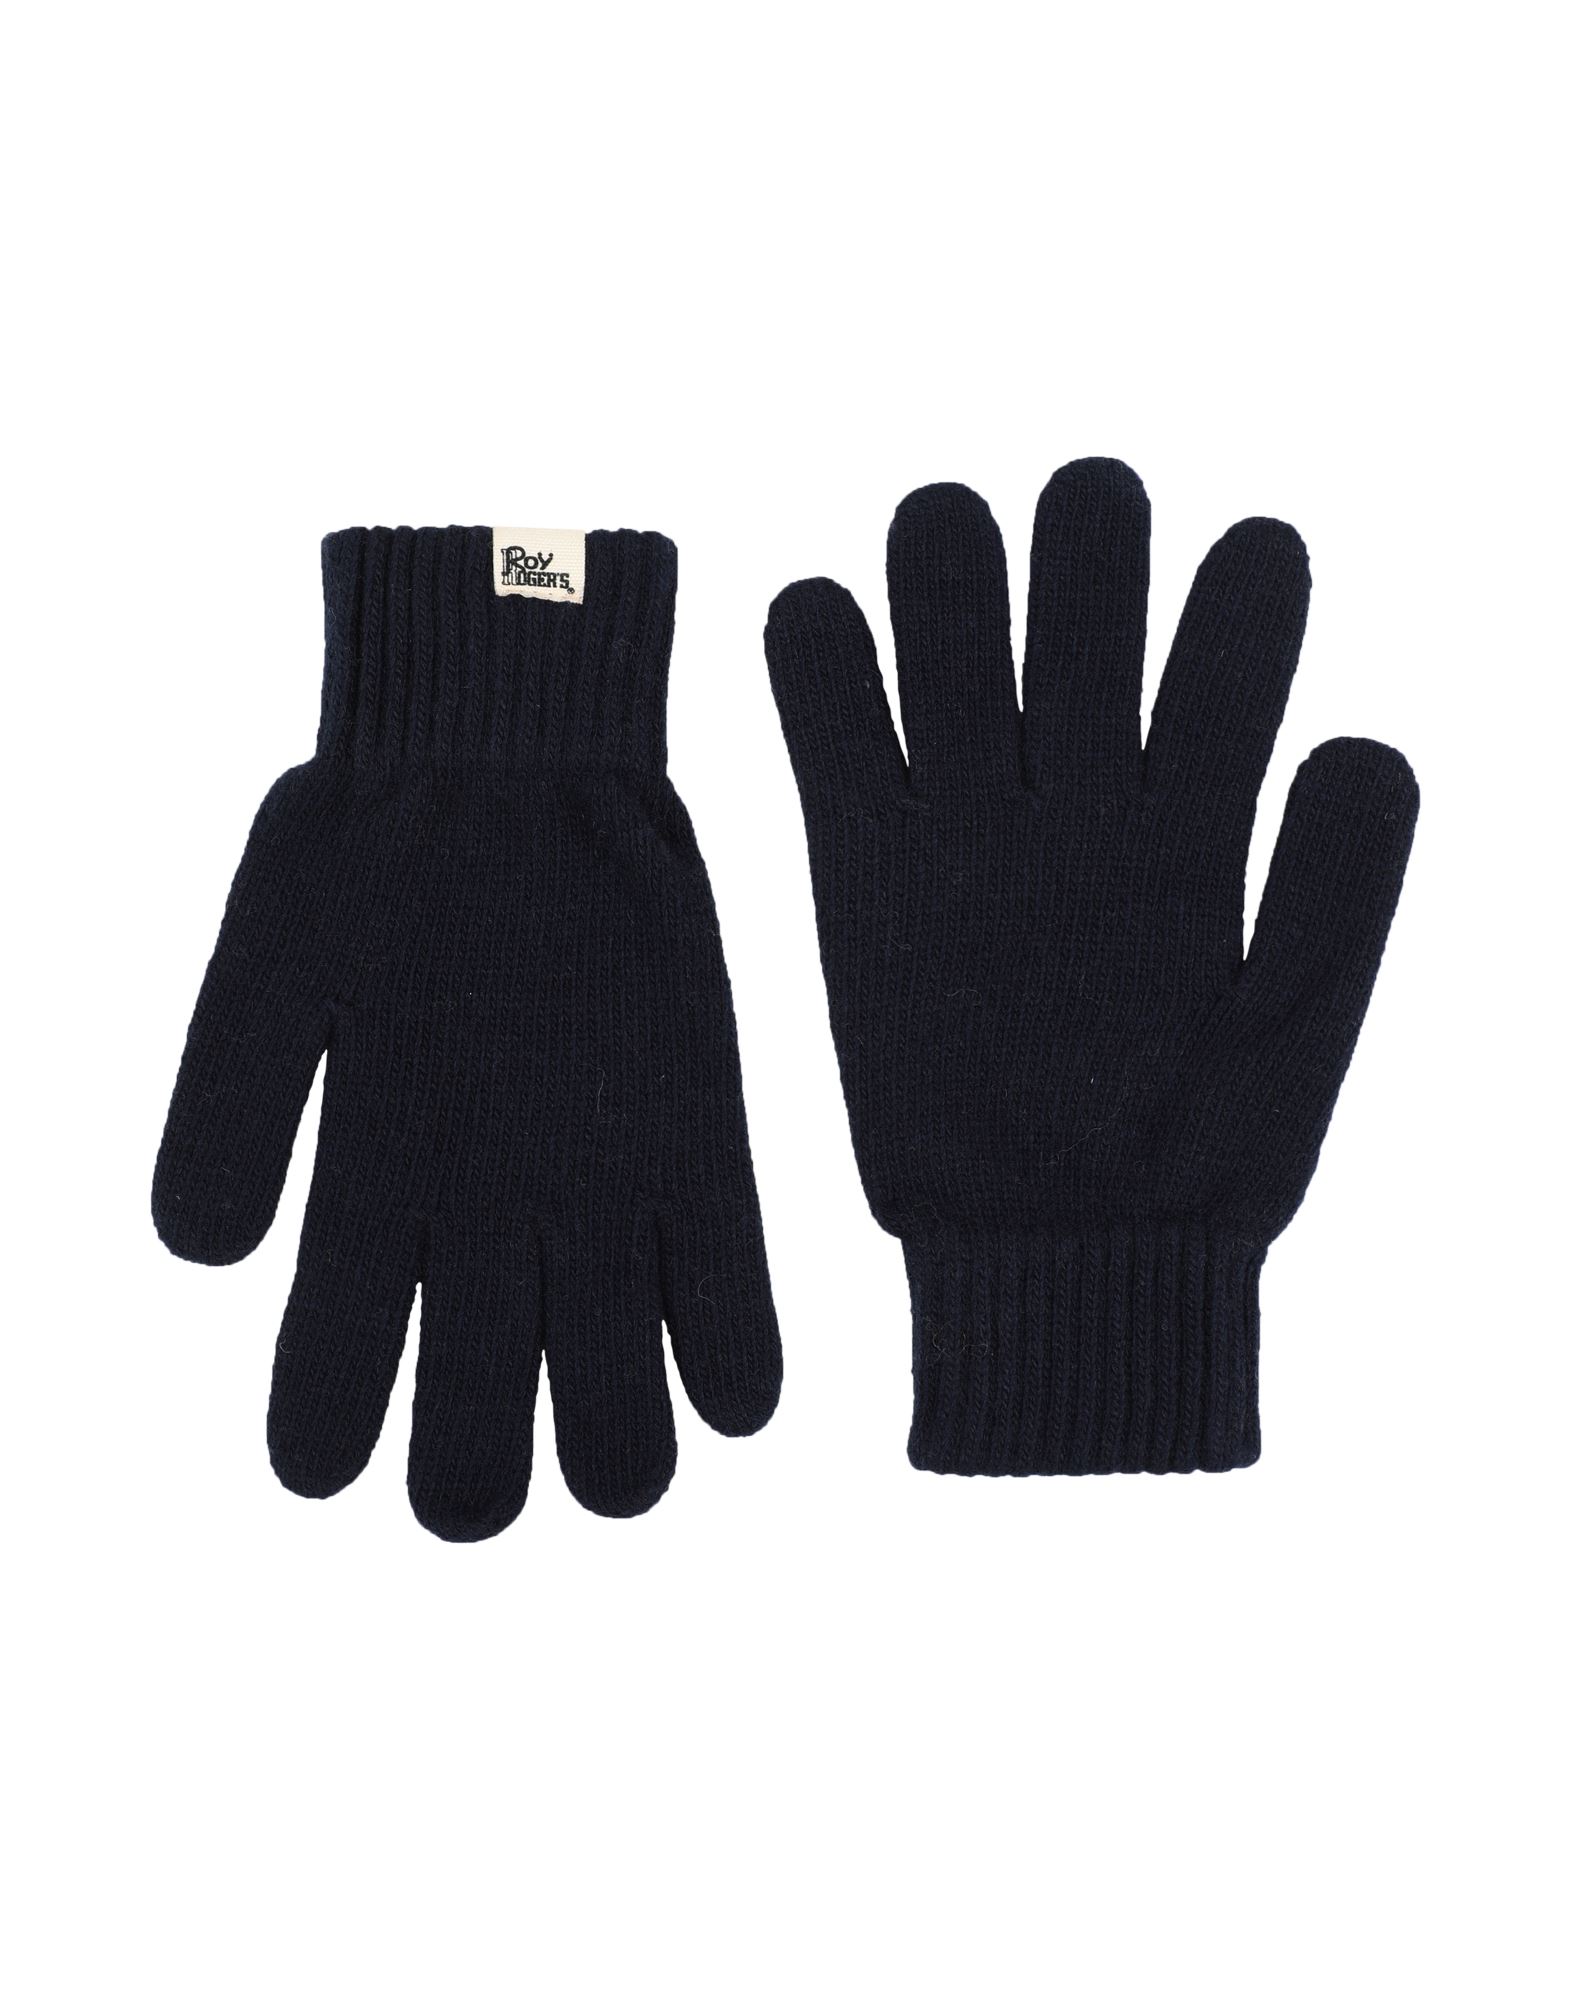 ROŸ ROGER'S Handschuhe Herren Nachtblau von ROŸ ROGER'S